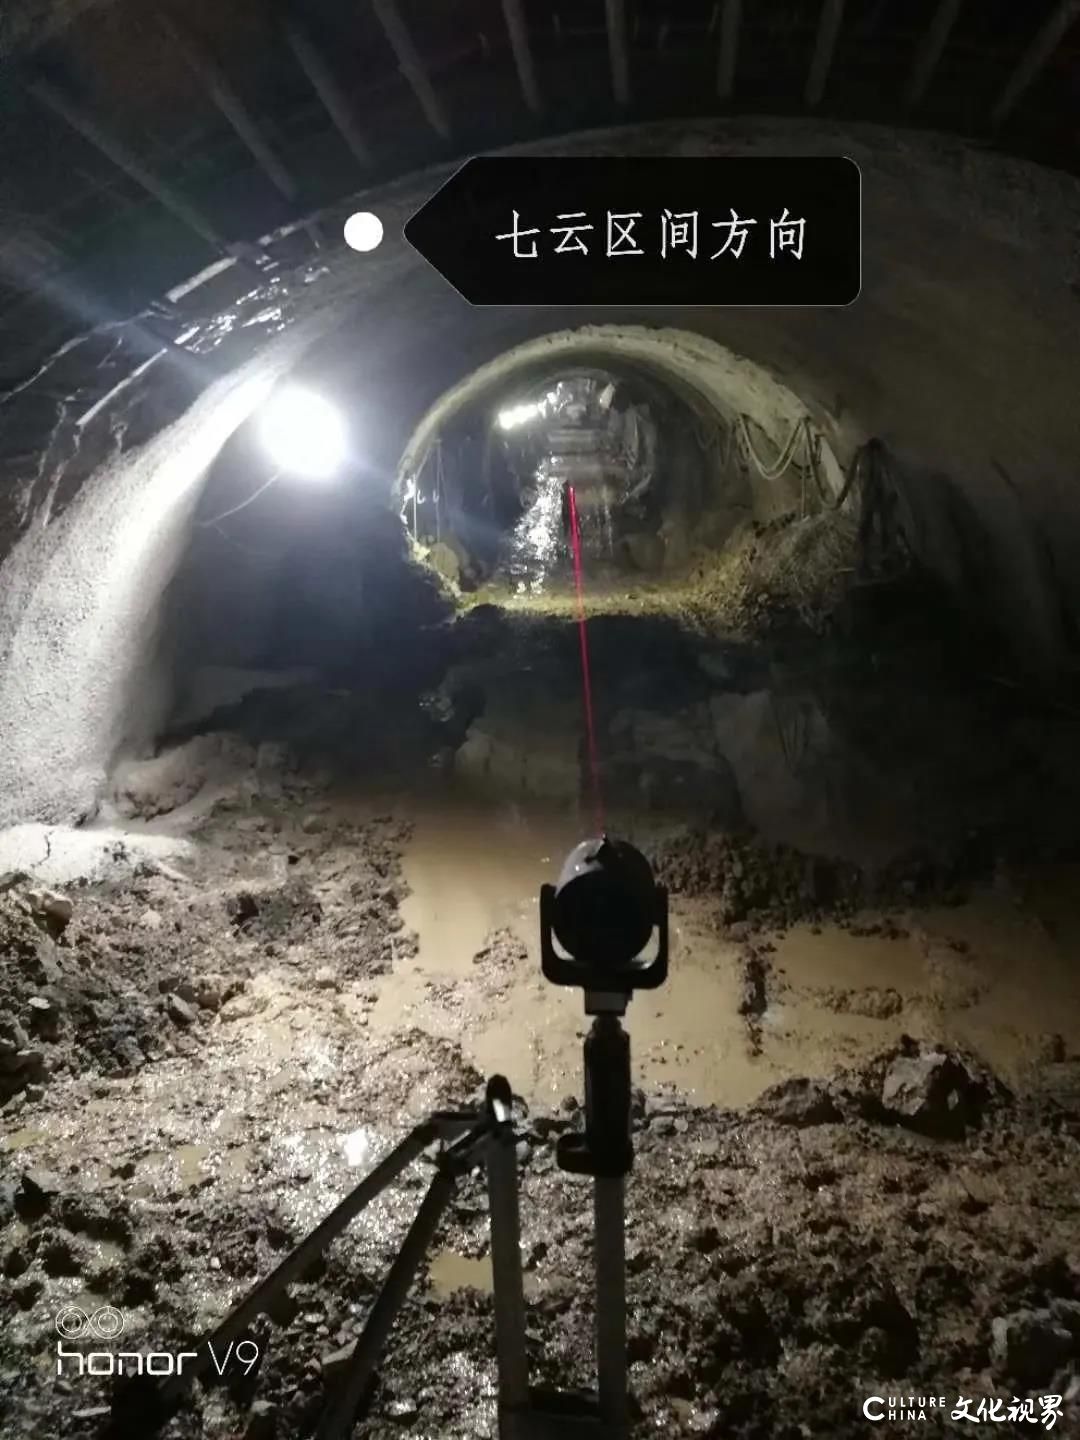 不惧艰险   保质保量，中铁隆工程集团贵阳地铁2号线项目通过竣工验收